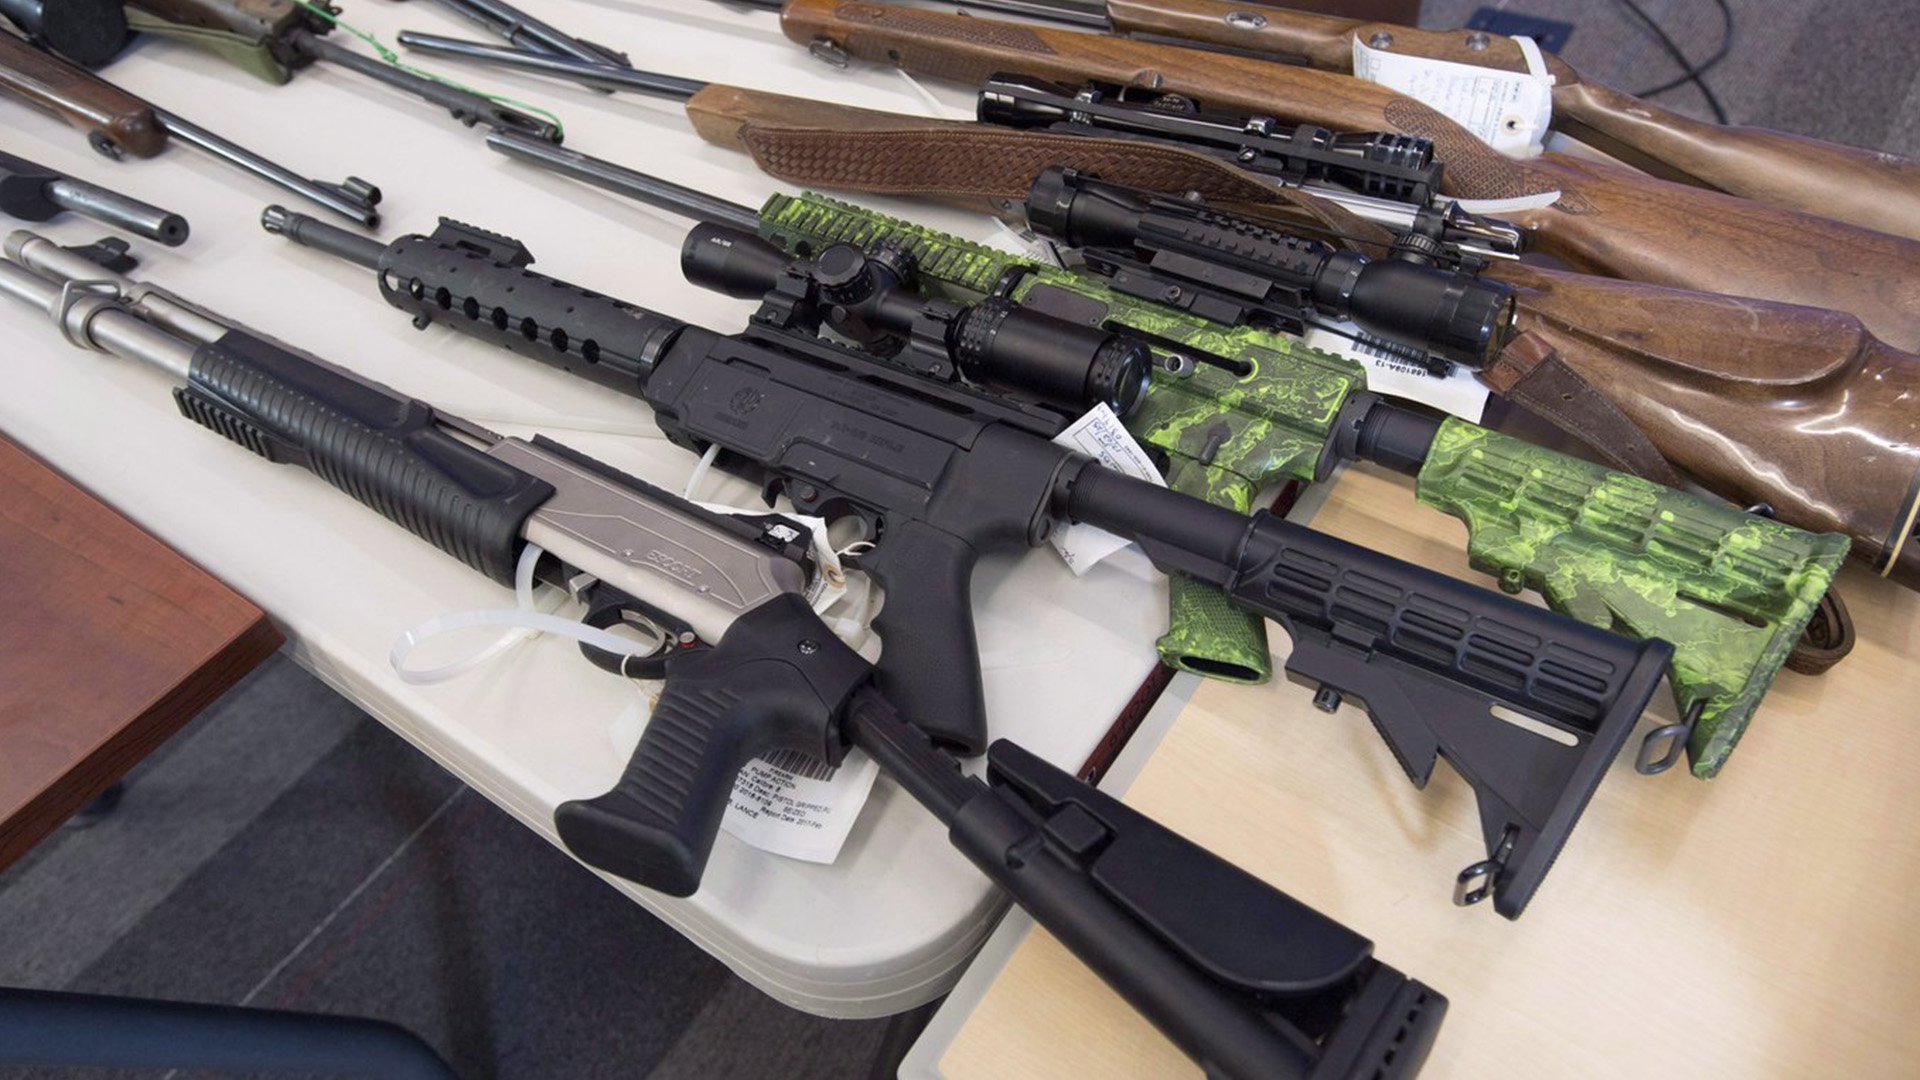 Des armes prohibées au Canada ont été vendues légalement par erreur